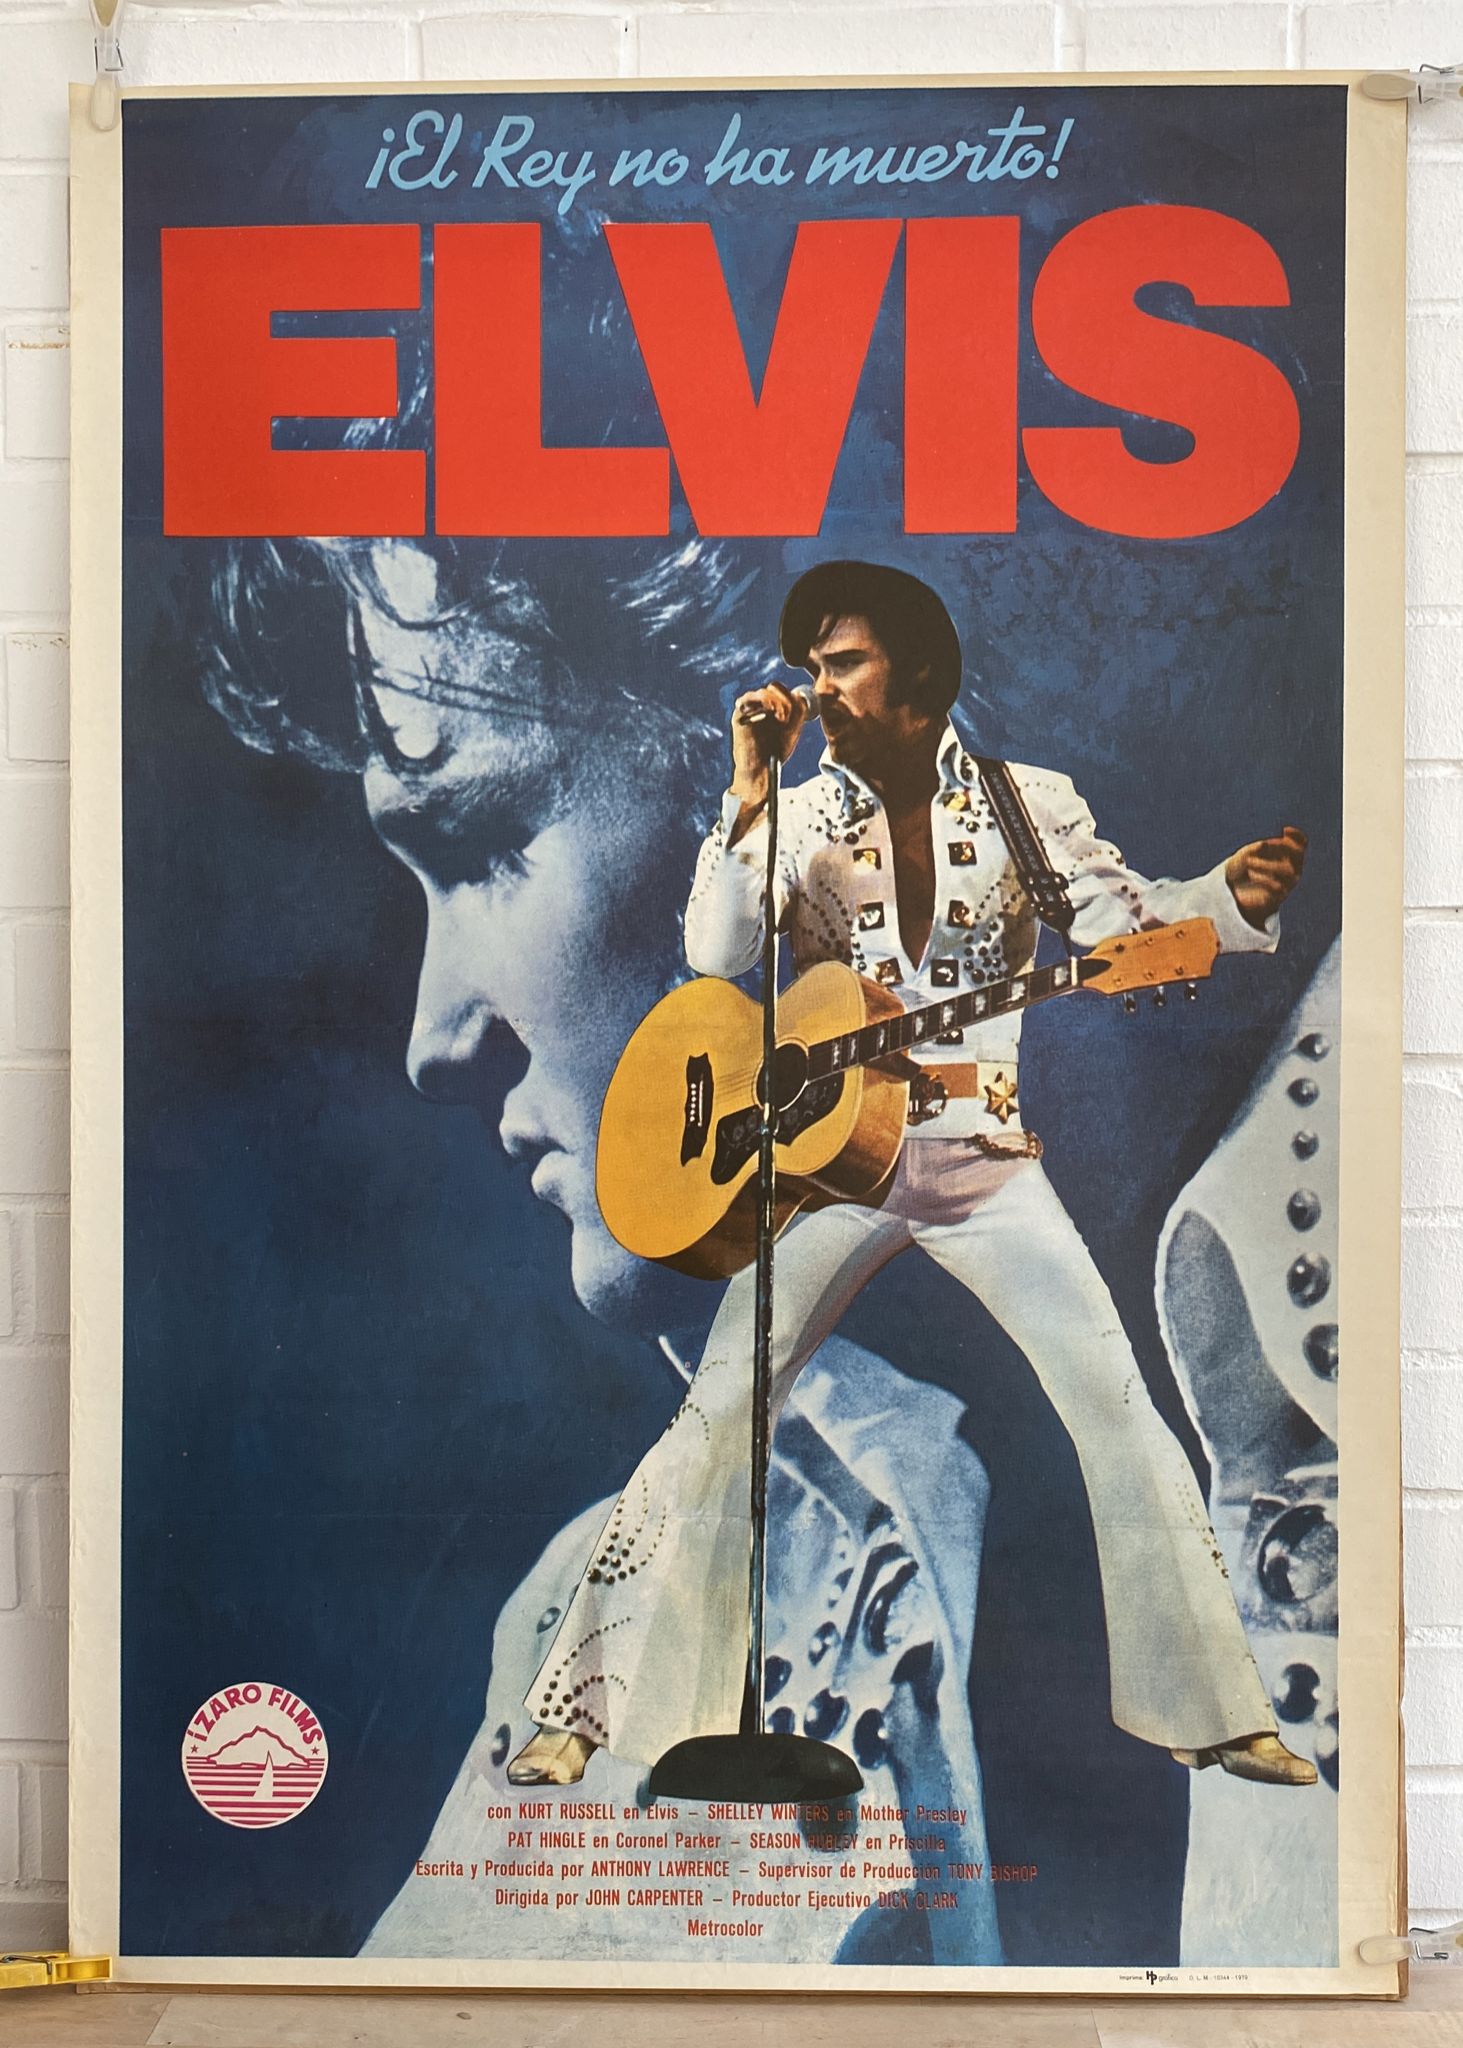 Elvis ¡El Rey no ha muerto! Cartel (100x70) de Estreno, 1979